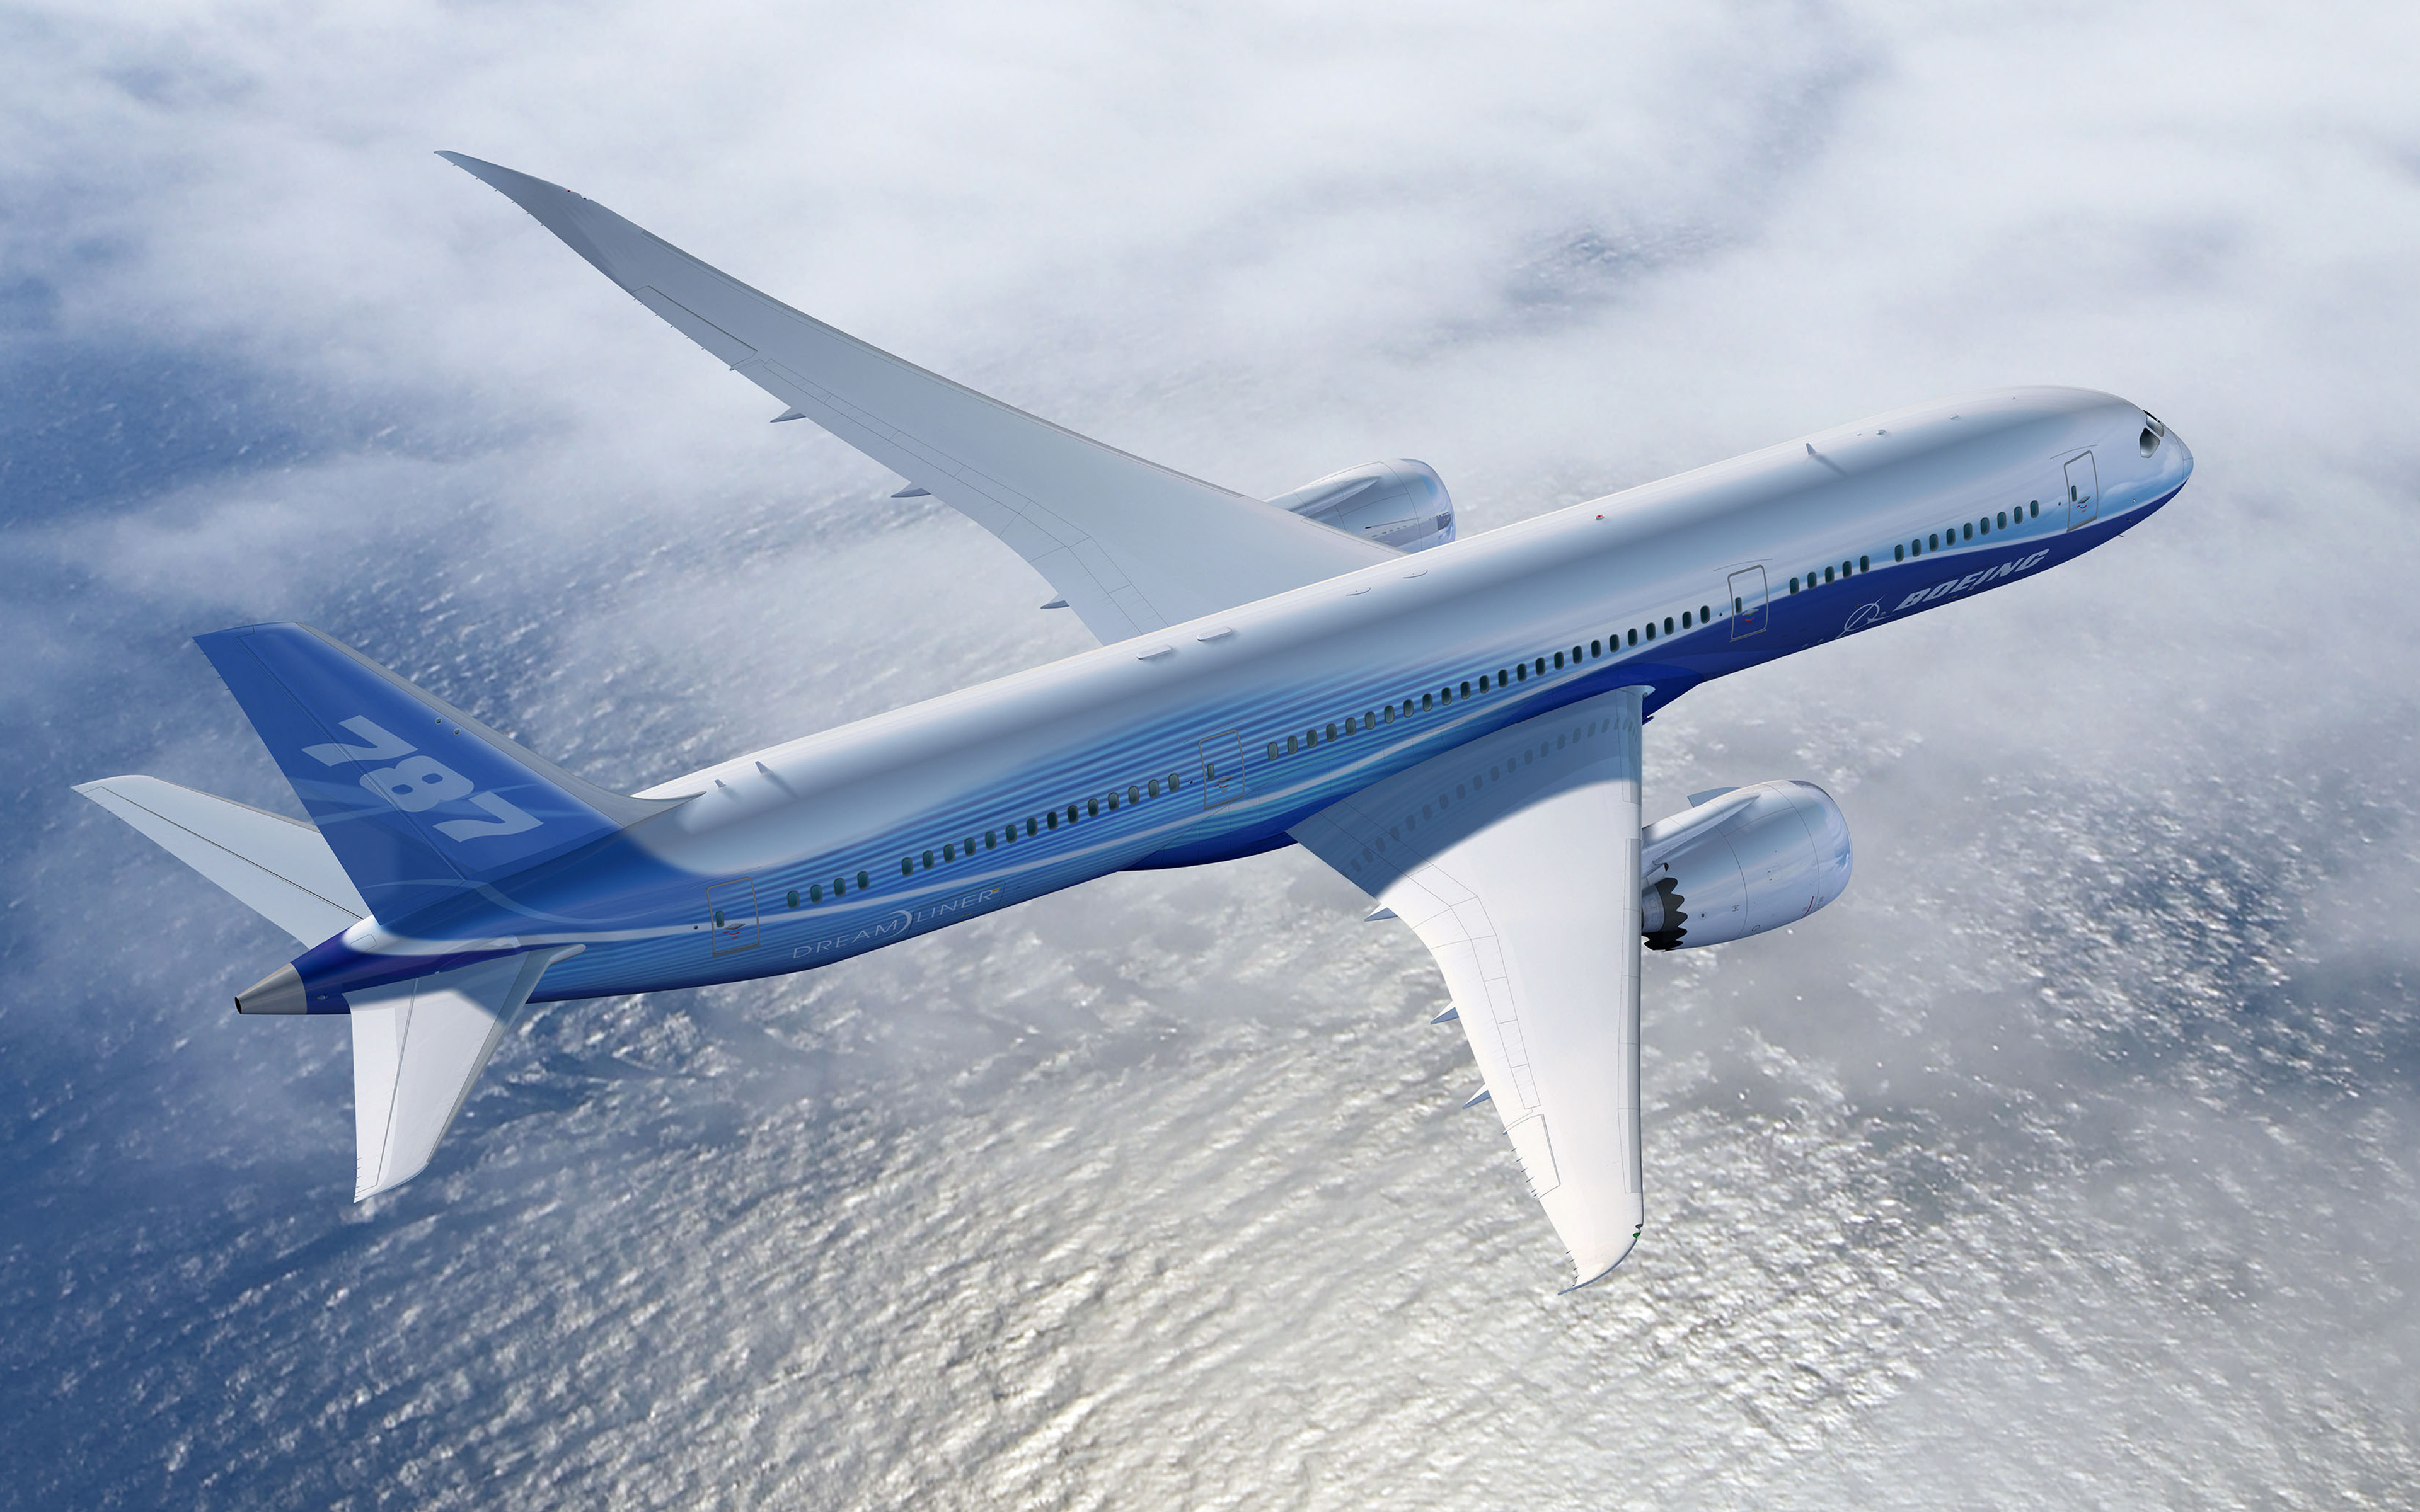 Download wallpaper Boeing 787 Dreamliner, 4k, jet passenger plane